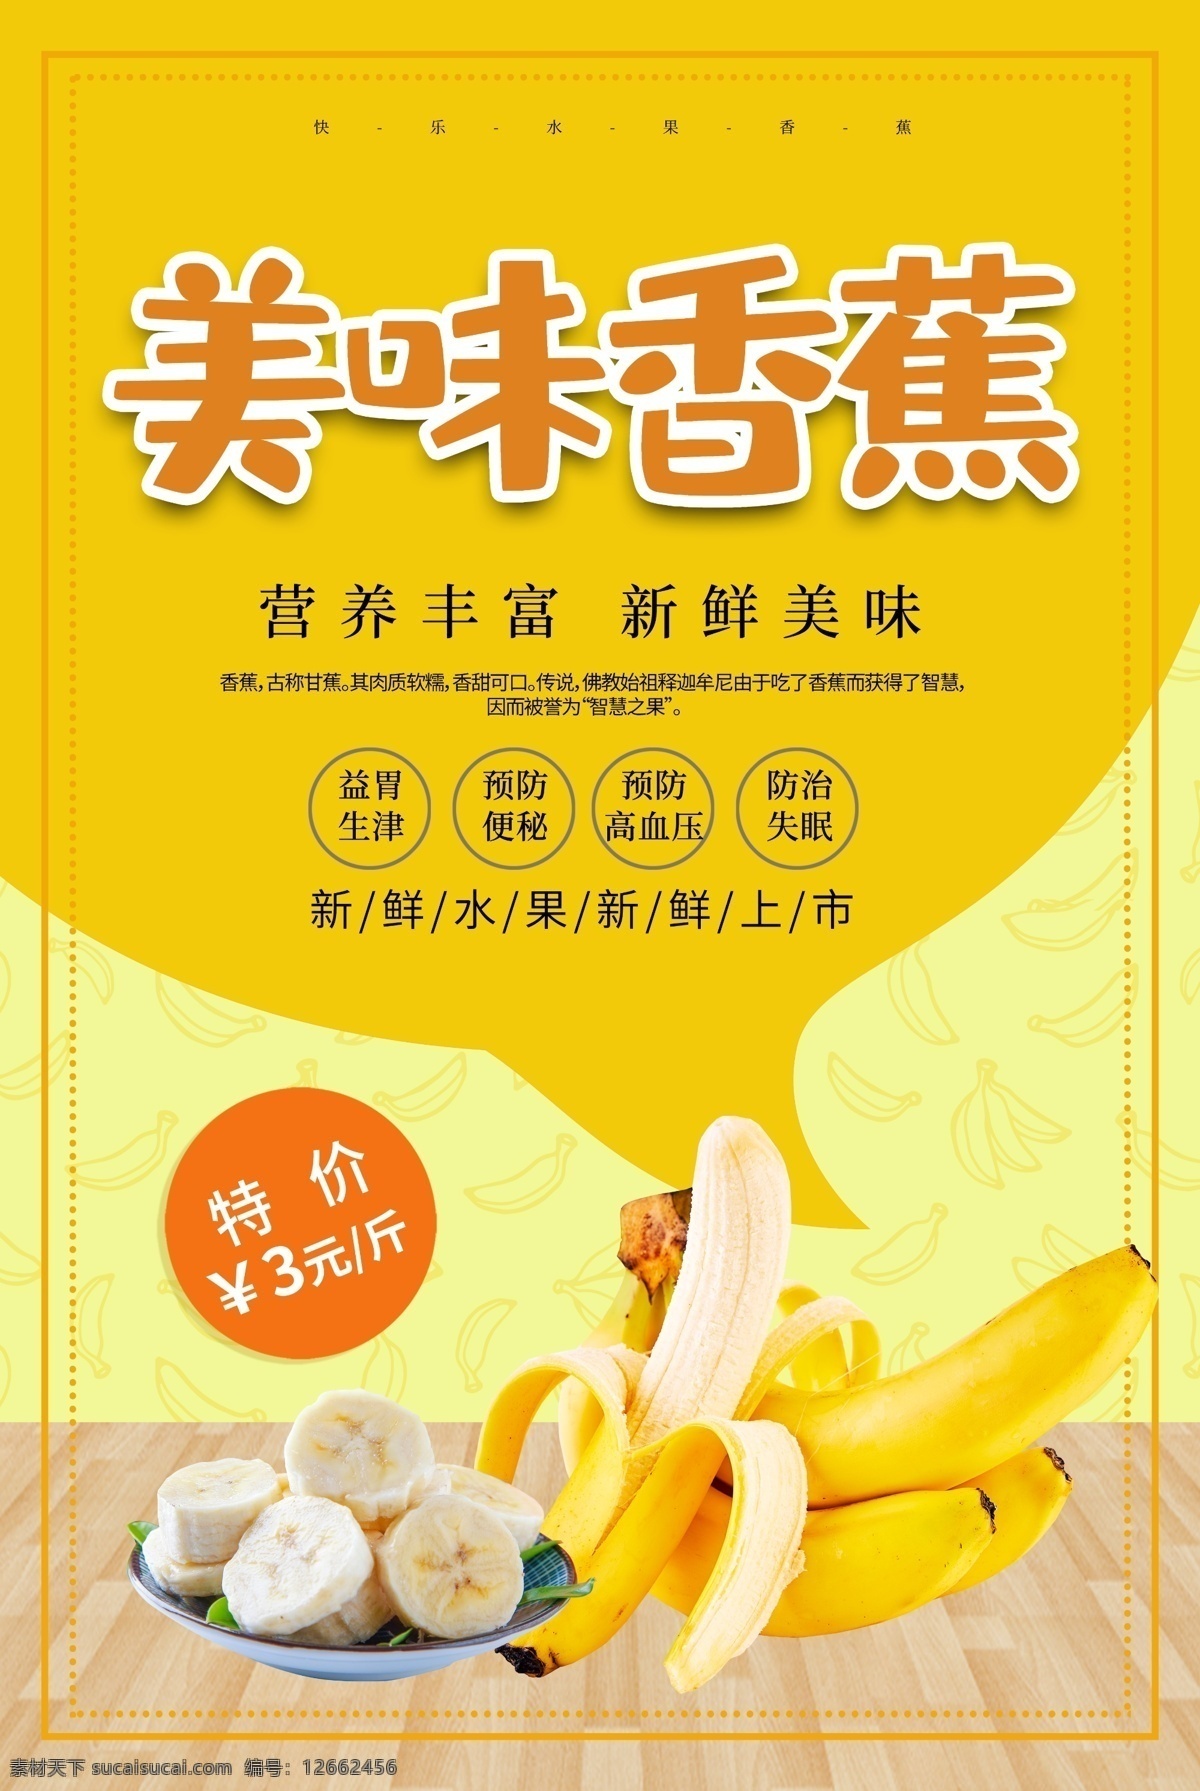 黄色 简约 香蕉 水果 海报 水果海报 水果促销 促销海报 水果店促销 美食餐饮 美味香蕉 新鲜水果 水果宣传